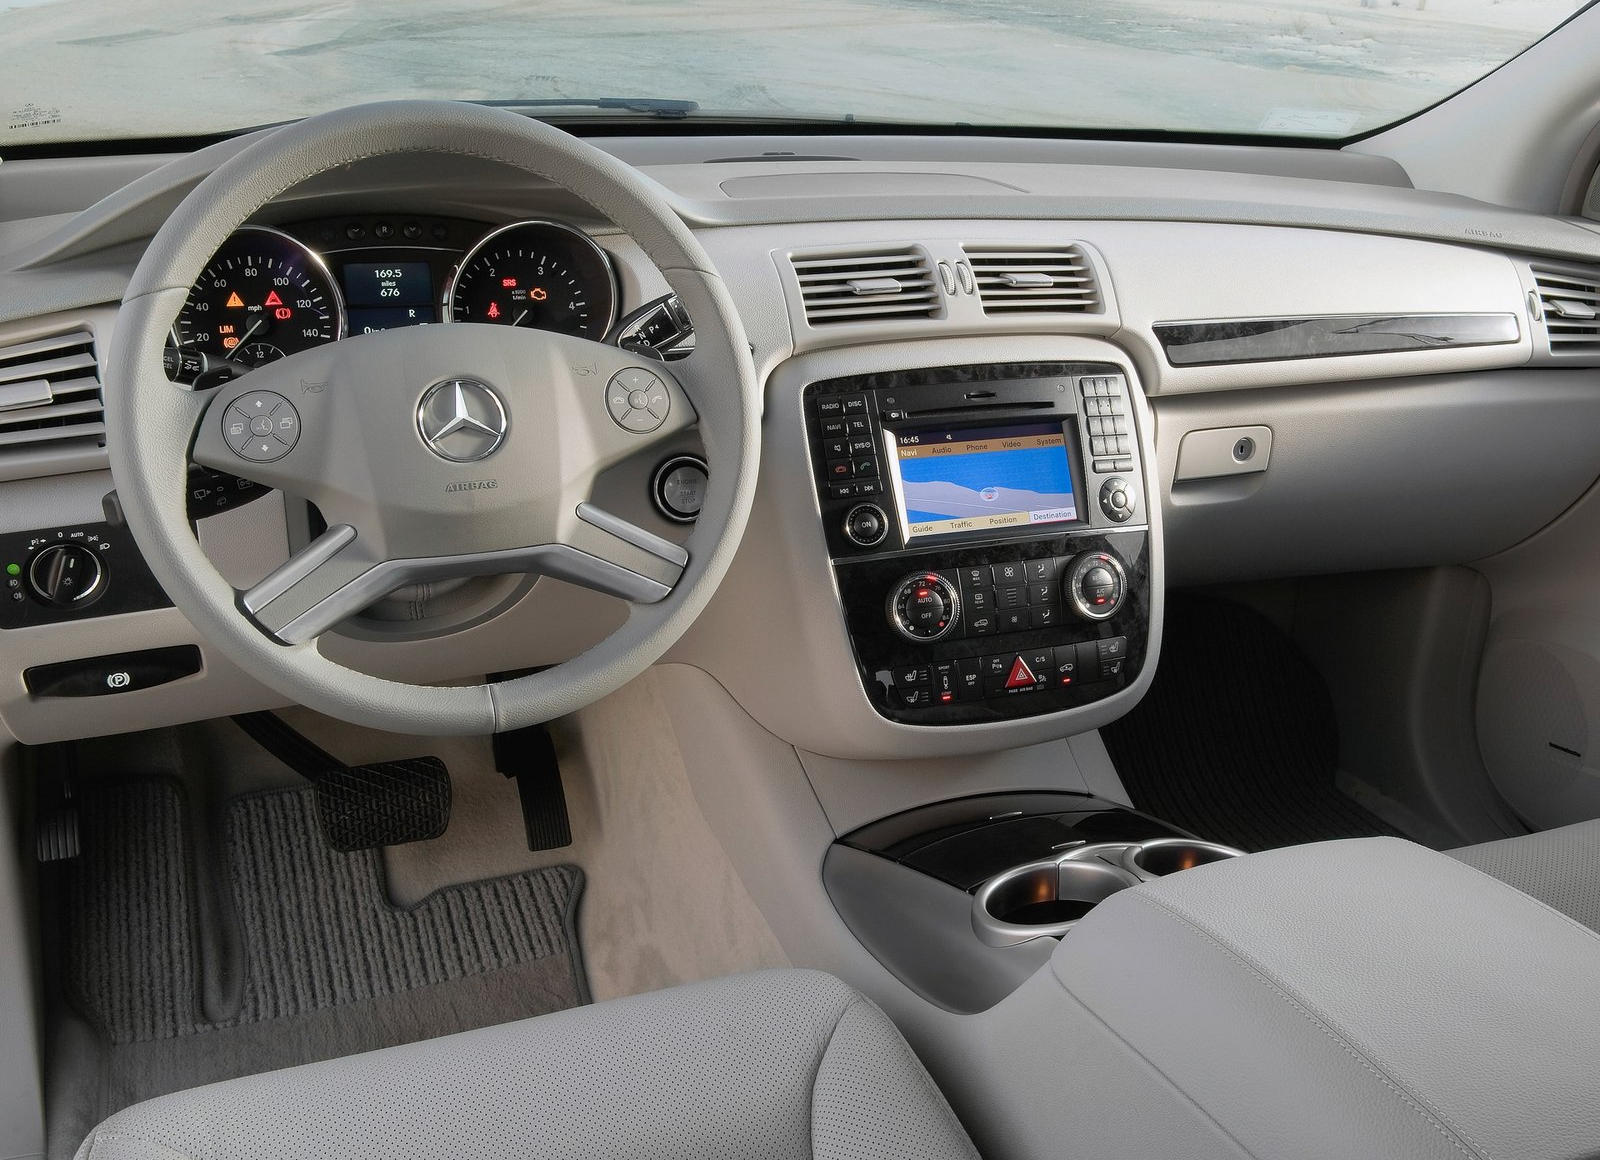 2009 Mercedes-Benz R-Class Interior Photos | CarBuzz